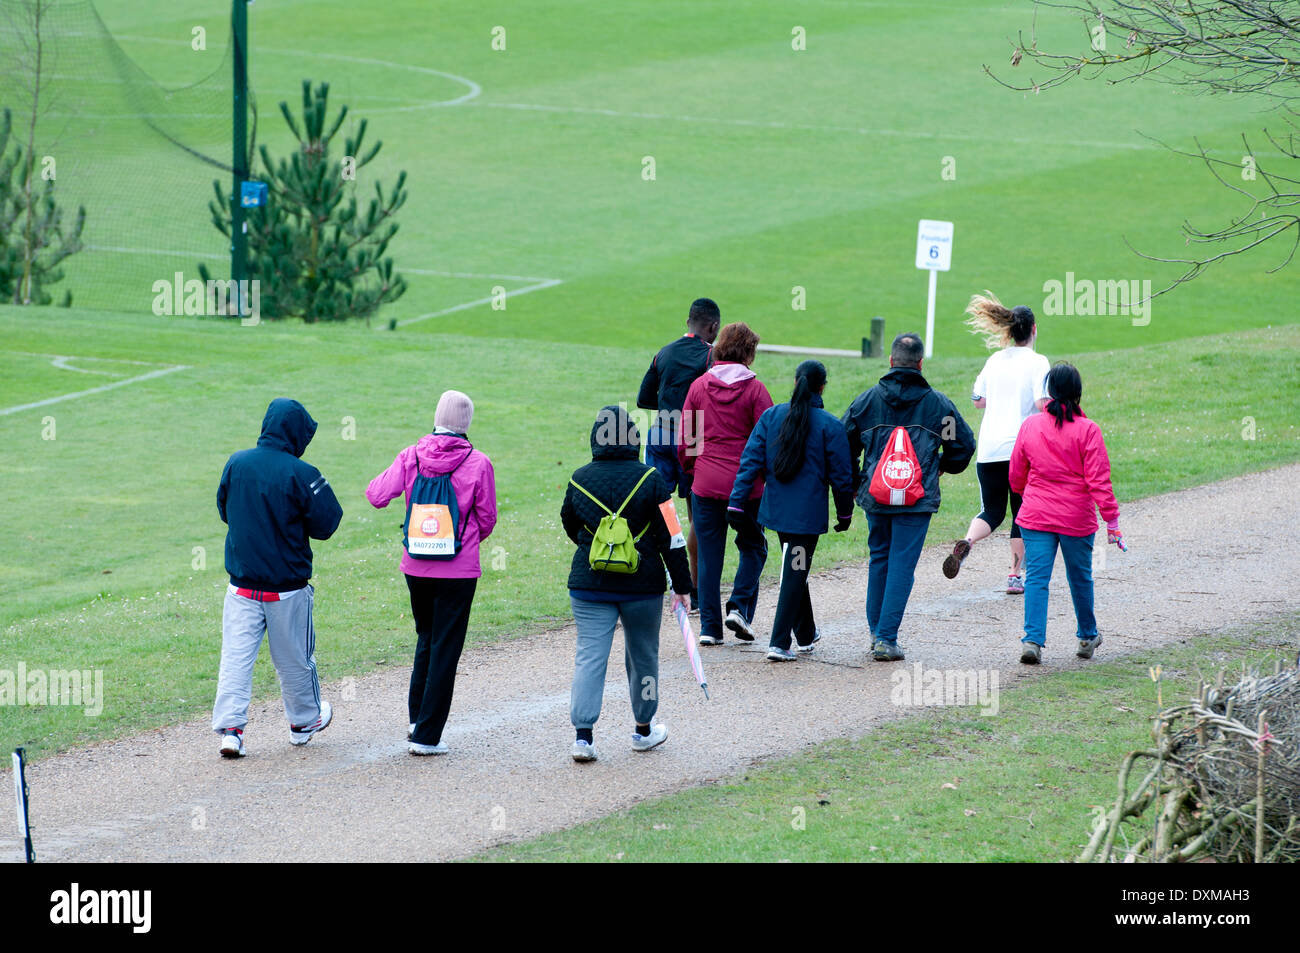 Les marcheurs dans un sport Relief Mile race Banque D'Images